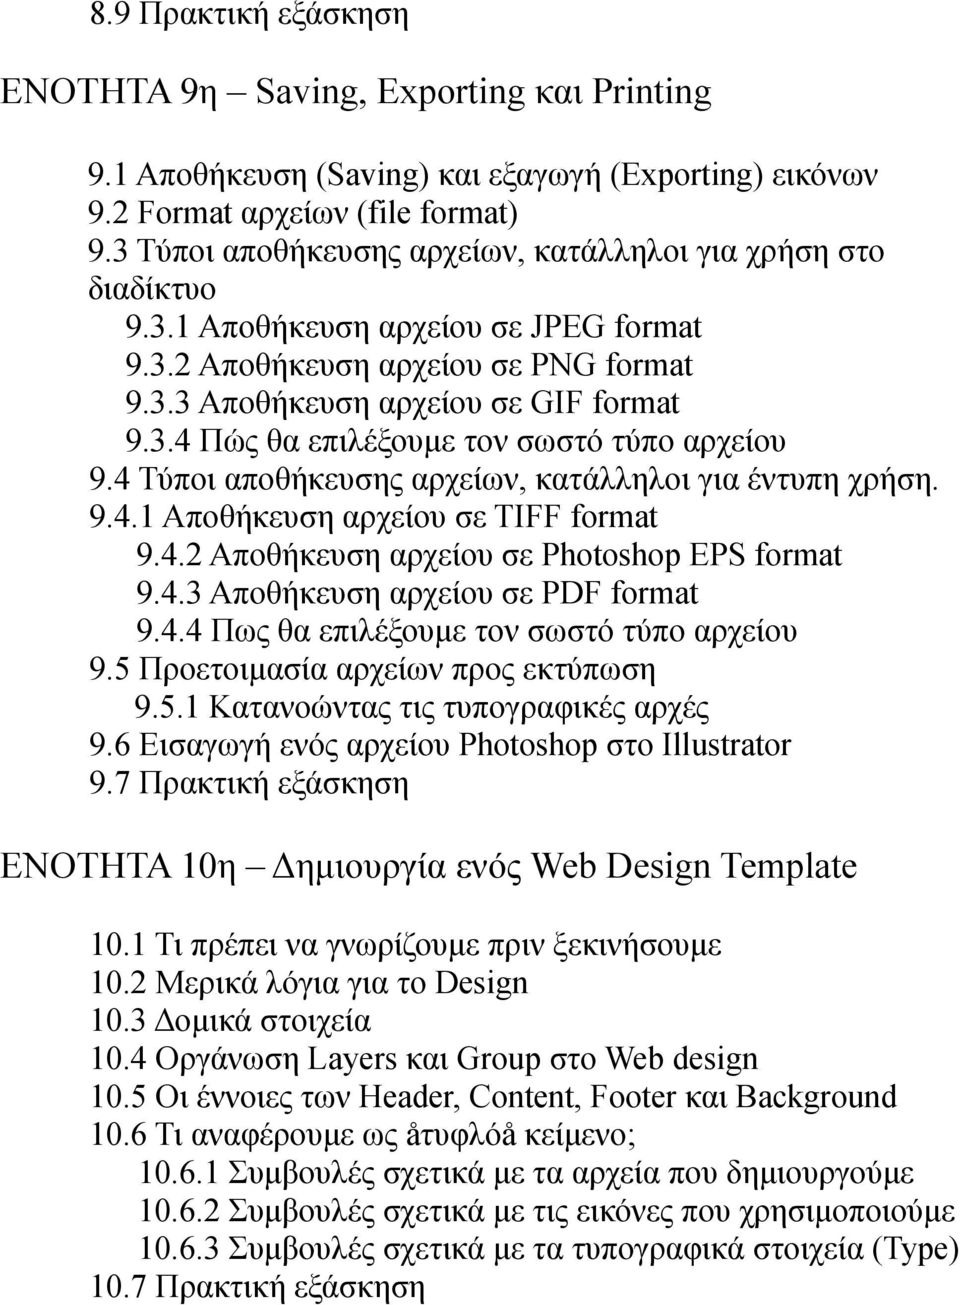 4 Τύποι αποθήκευσης αρχείων, κατάλληλοι για έντυπη χρήση. 9.4.1 Αποθήκευση αρχείου σε TIFF format 9.4.2 Αποθήκευση αρχείου σε Photoshop EPS format 9.4.3 Αποθήκευση αρχείου σε PDF format 9.4.4 Πως θα επιλέξουμε τον σωστό τύπο αρχείου 9.